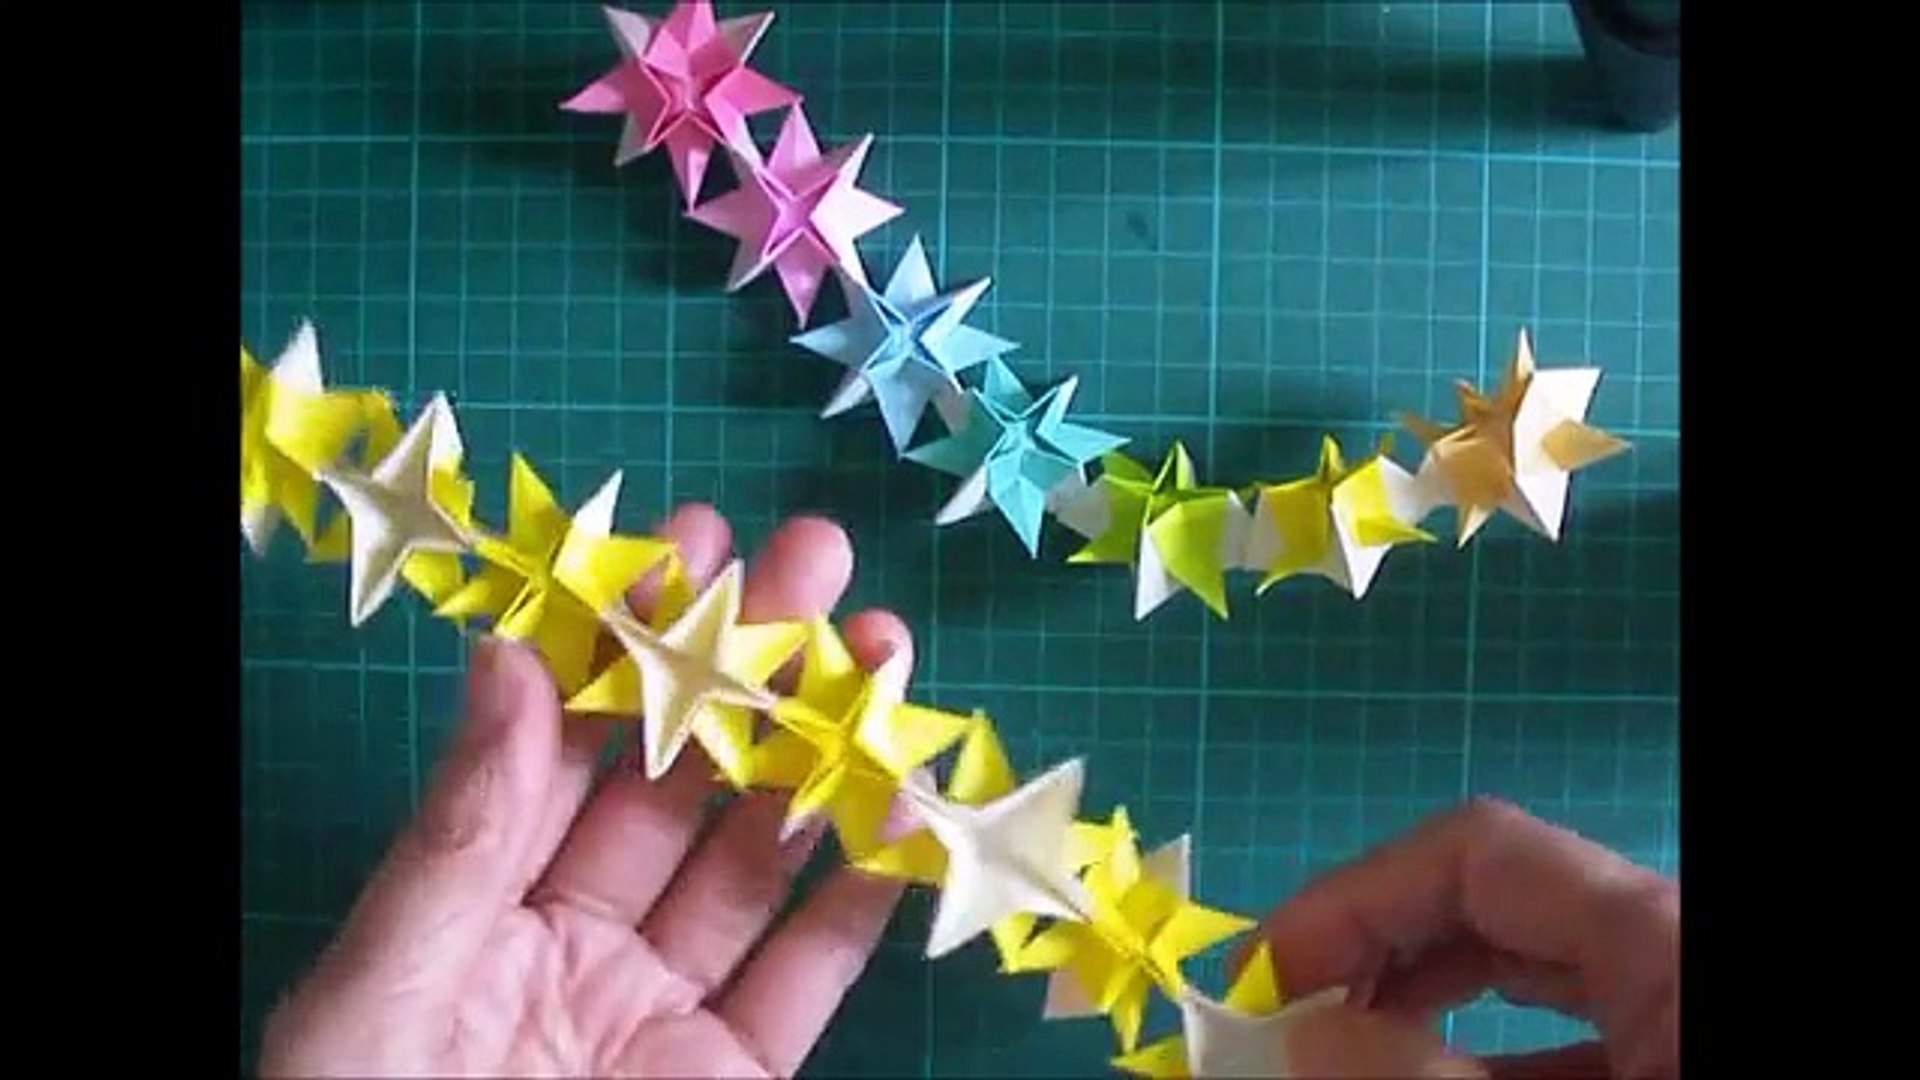 折り紙 星のガーランド 簡単な作り方 Niceno1 Origami Star Garland Tutorial G3xeixze0fg Video Dailymotion